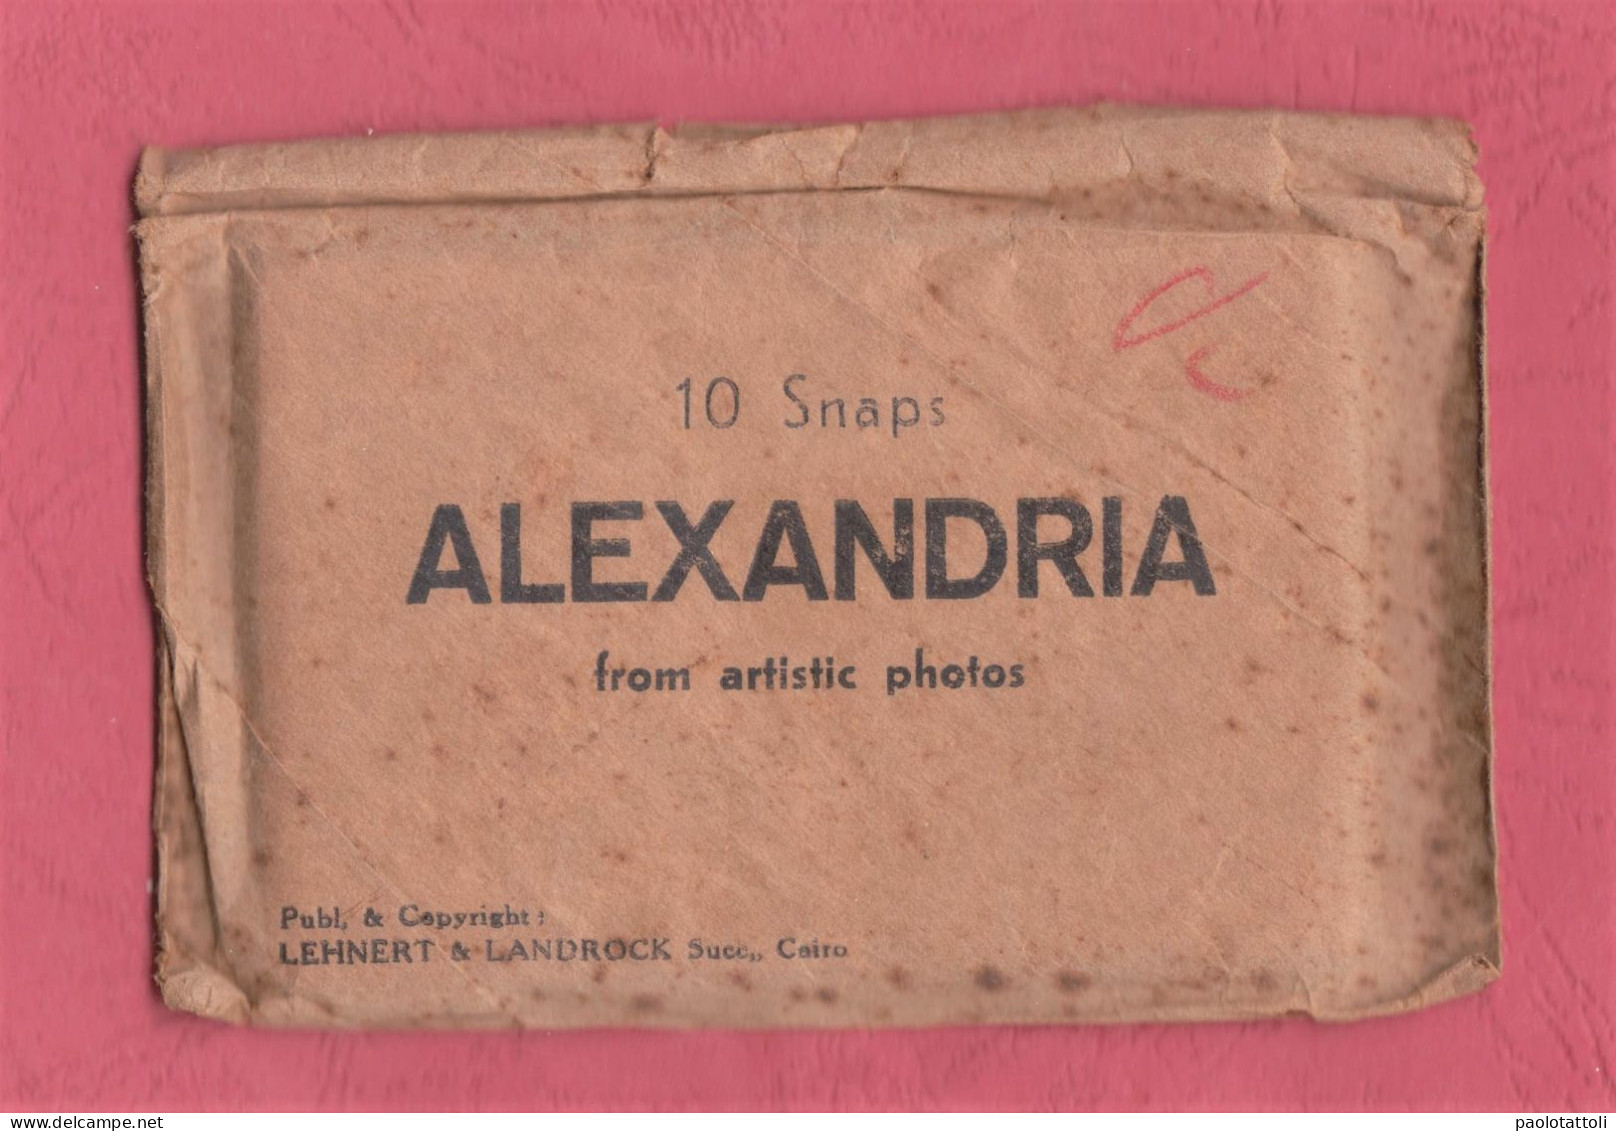 Egypt. Alexandria. 10 Snap From Artistic Photos. Publ. & Copyright Lehnert & Landrock. 92x 60mm. - Souvenirs